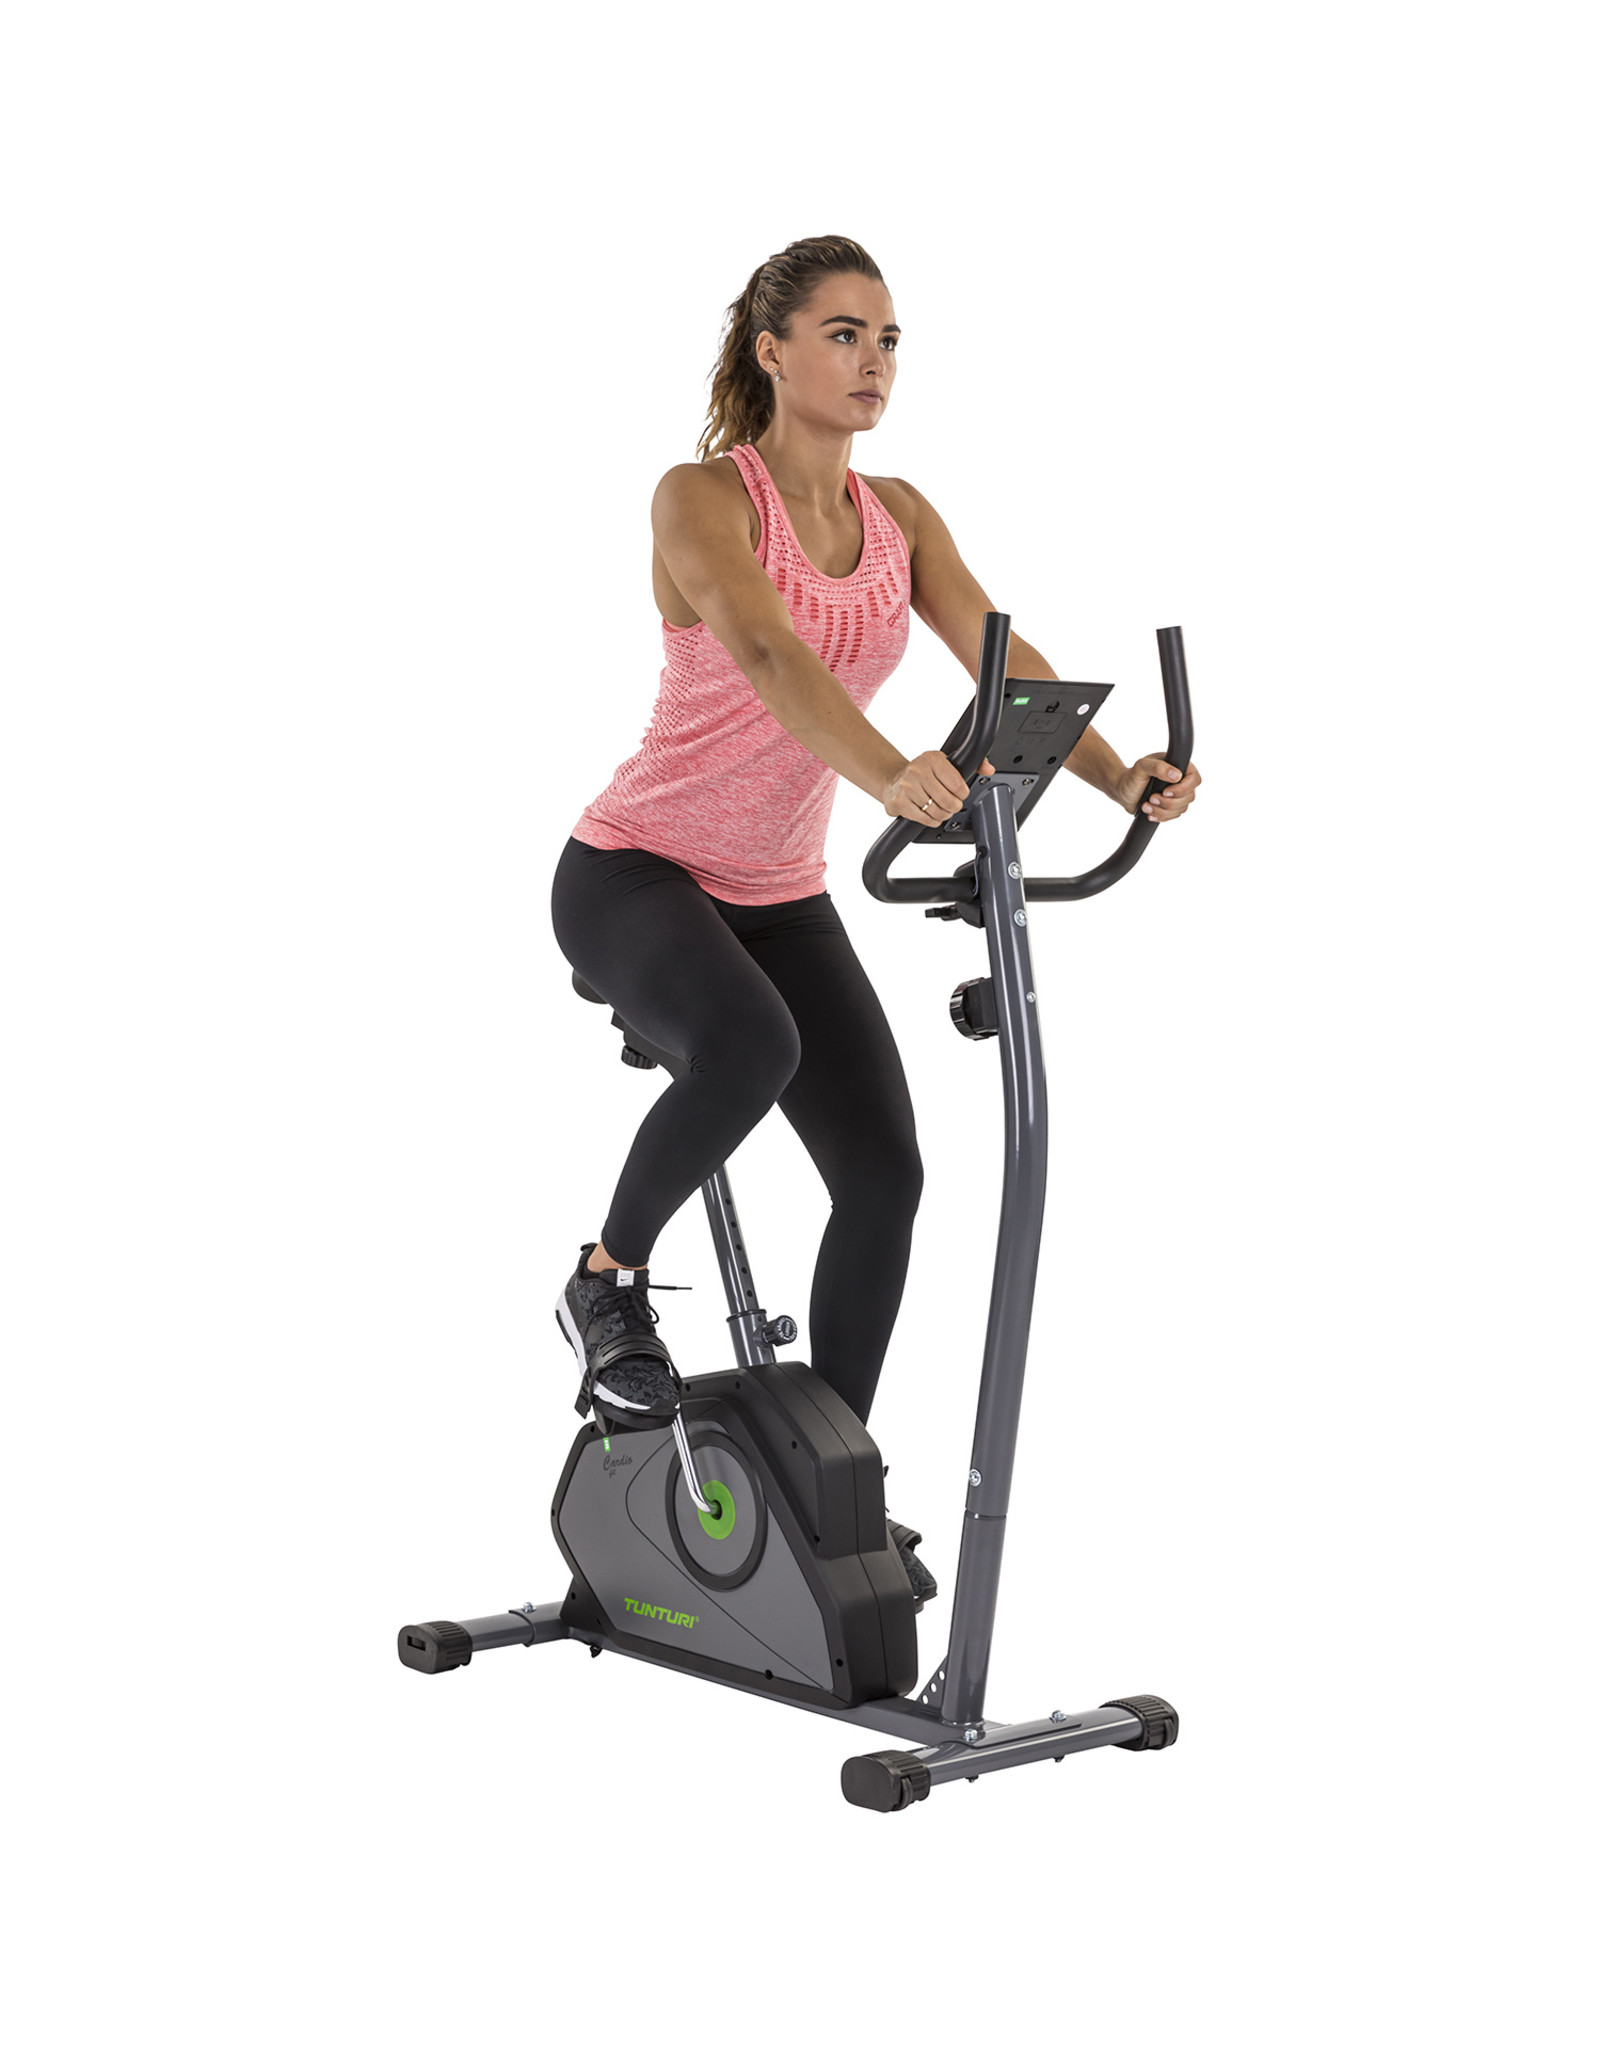 Cardio Fit B40 Hometrainer - Fitnessfiets met lage instap - 8 weerstandsniveaus - Voorzien van en transportwielen - NiemanSports